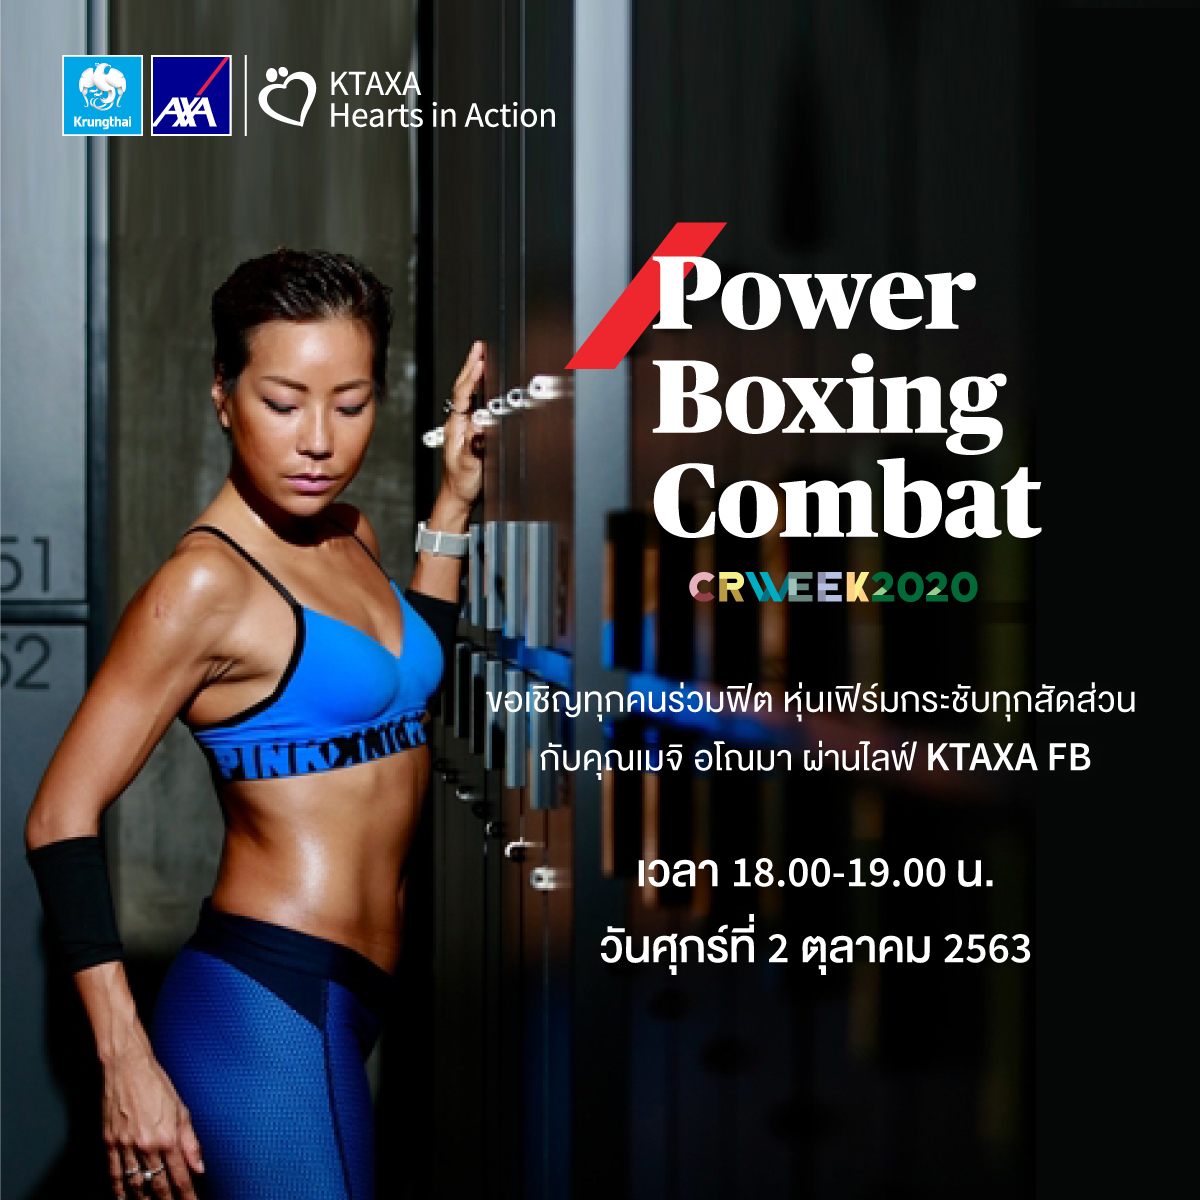 กรุงไทยแอกซ่า ประกันชีวิต เชิญชวนเข้าร่วมกิจกรรม Power Boxing Combat